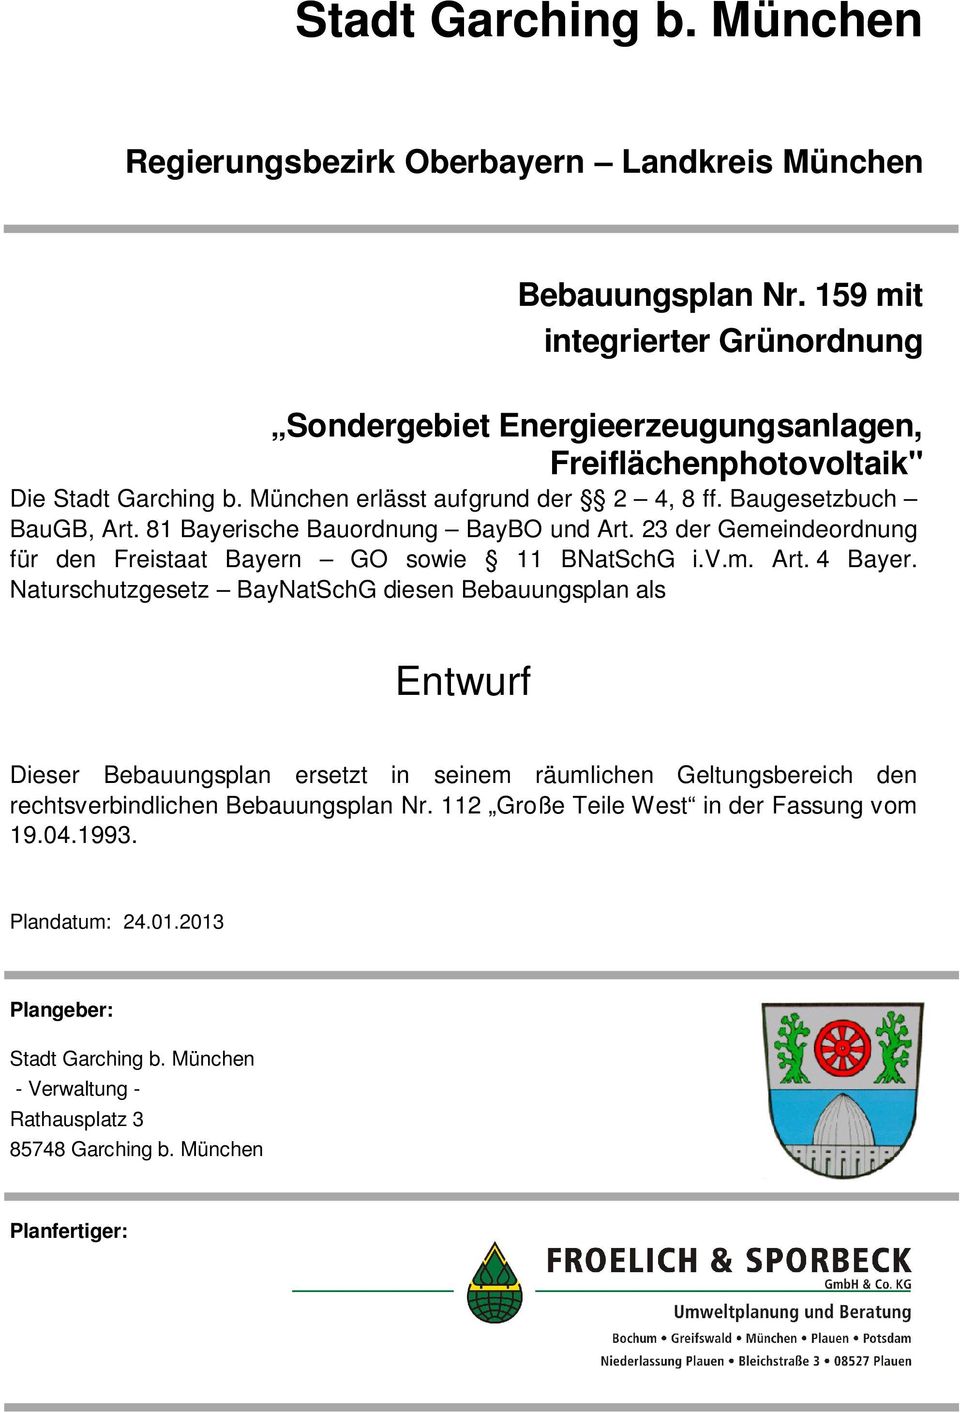 81 Bayerische Bauordnung BayBO und Art. 23 der Gemeindeordnung für den Freistaat Bayern GO sowie 11 BNatSchG i.v.m. Art. 4 Bayer.